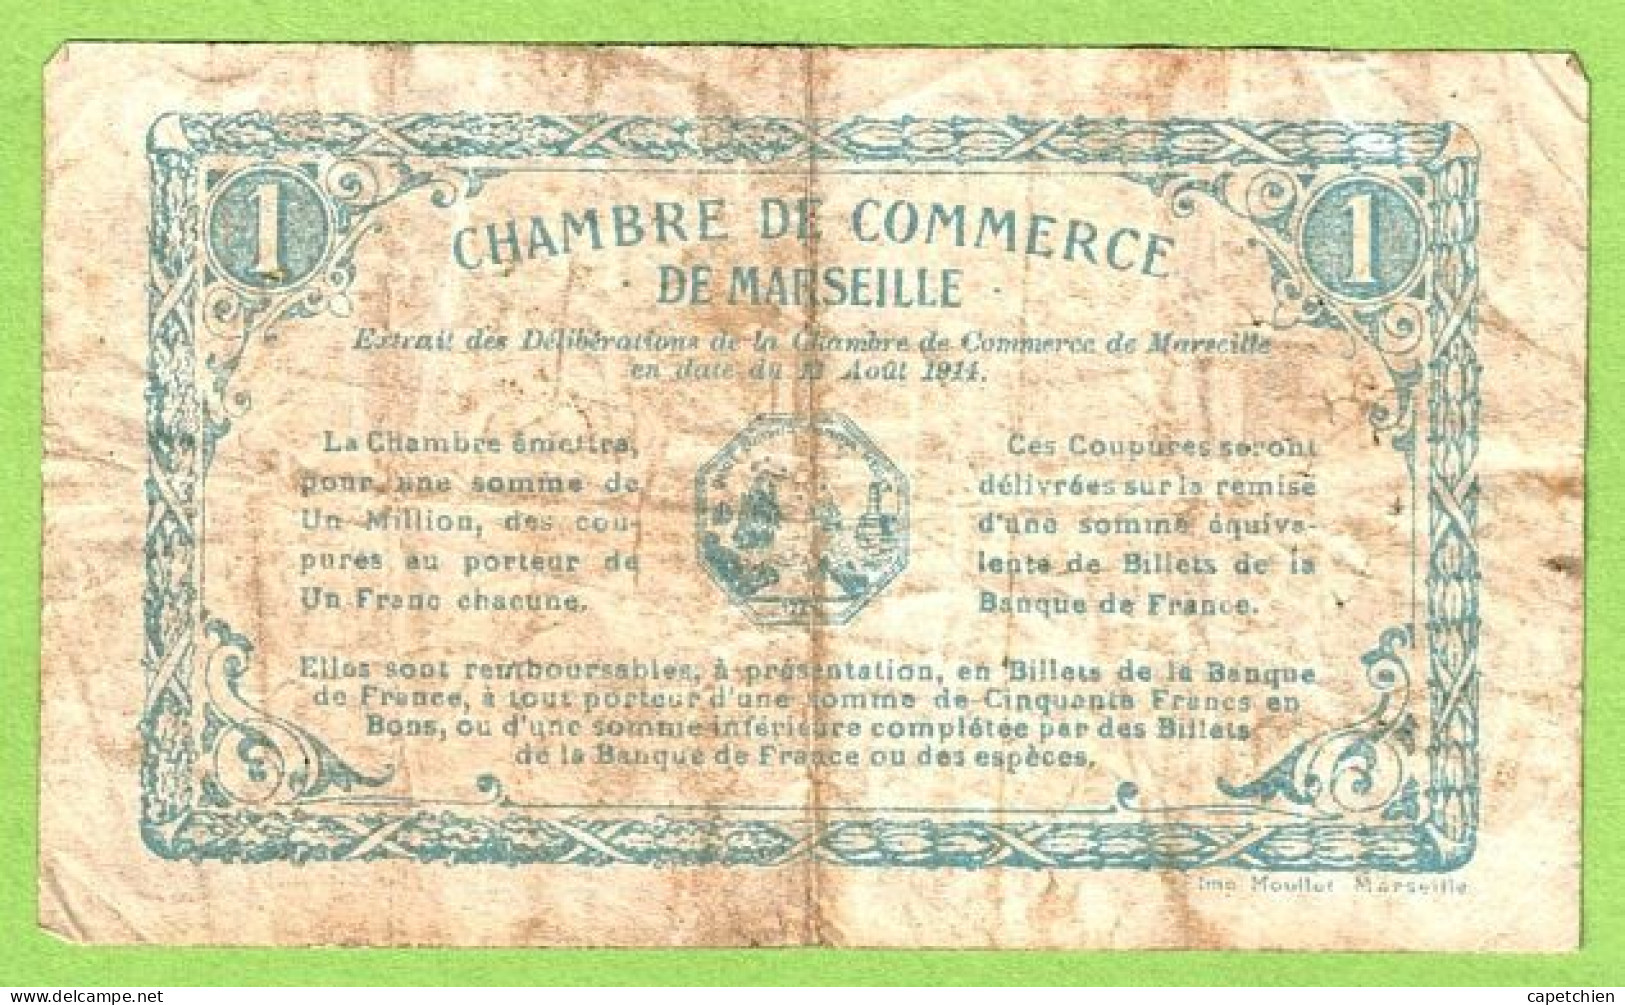 FRANCE / CHAMBRE De COMMERCE / MARSEILLE / 1 FRANC / 13 AOUT 1914 / N° 97921 / SERIE E - Camera Di Commercio